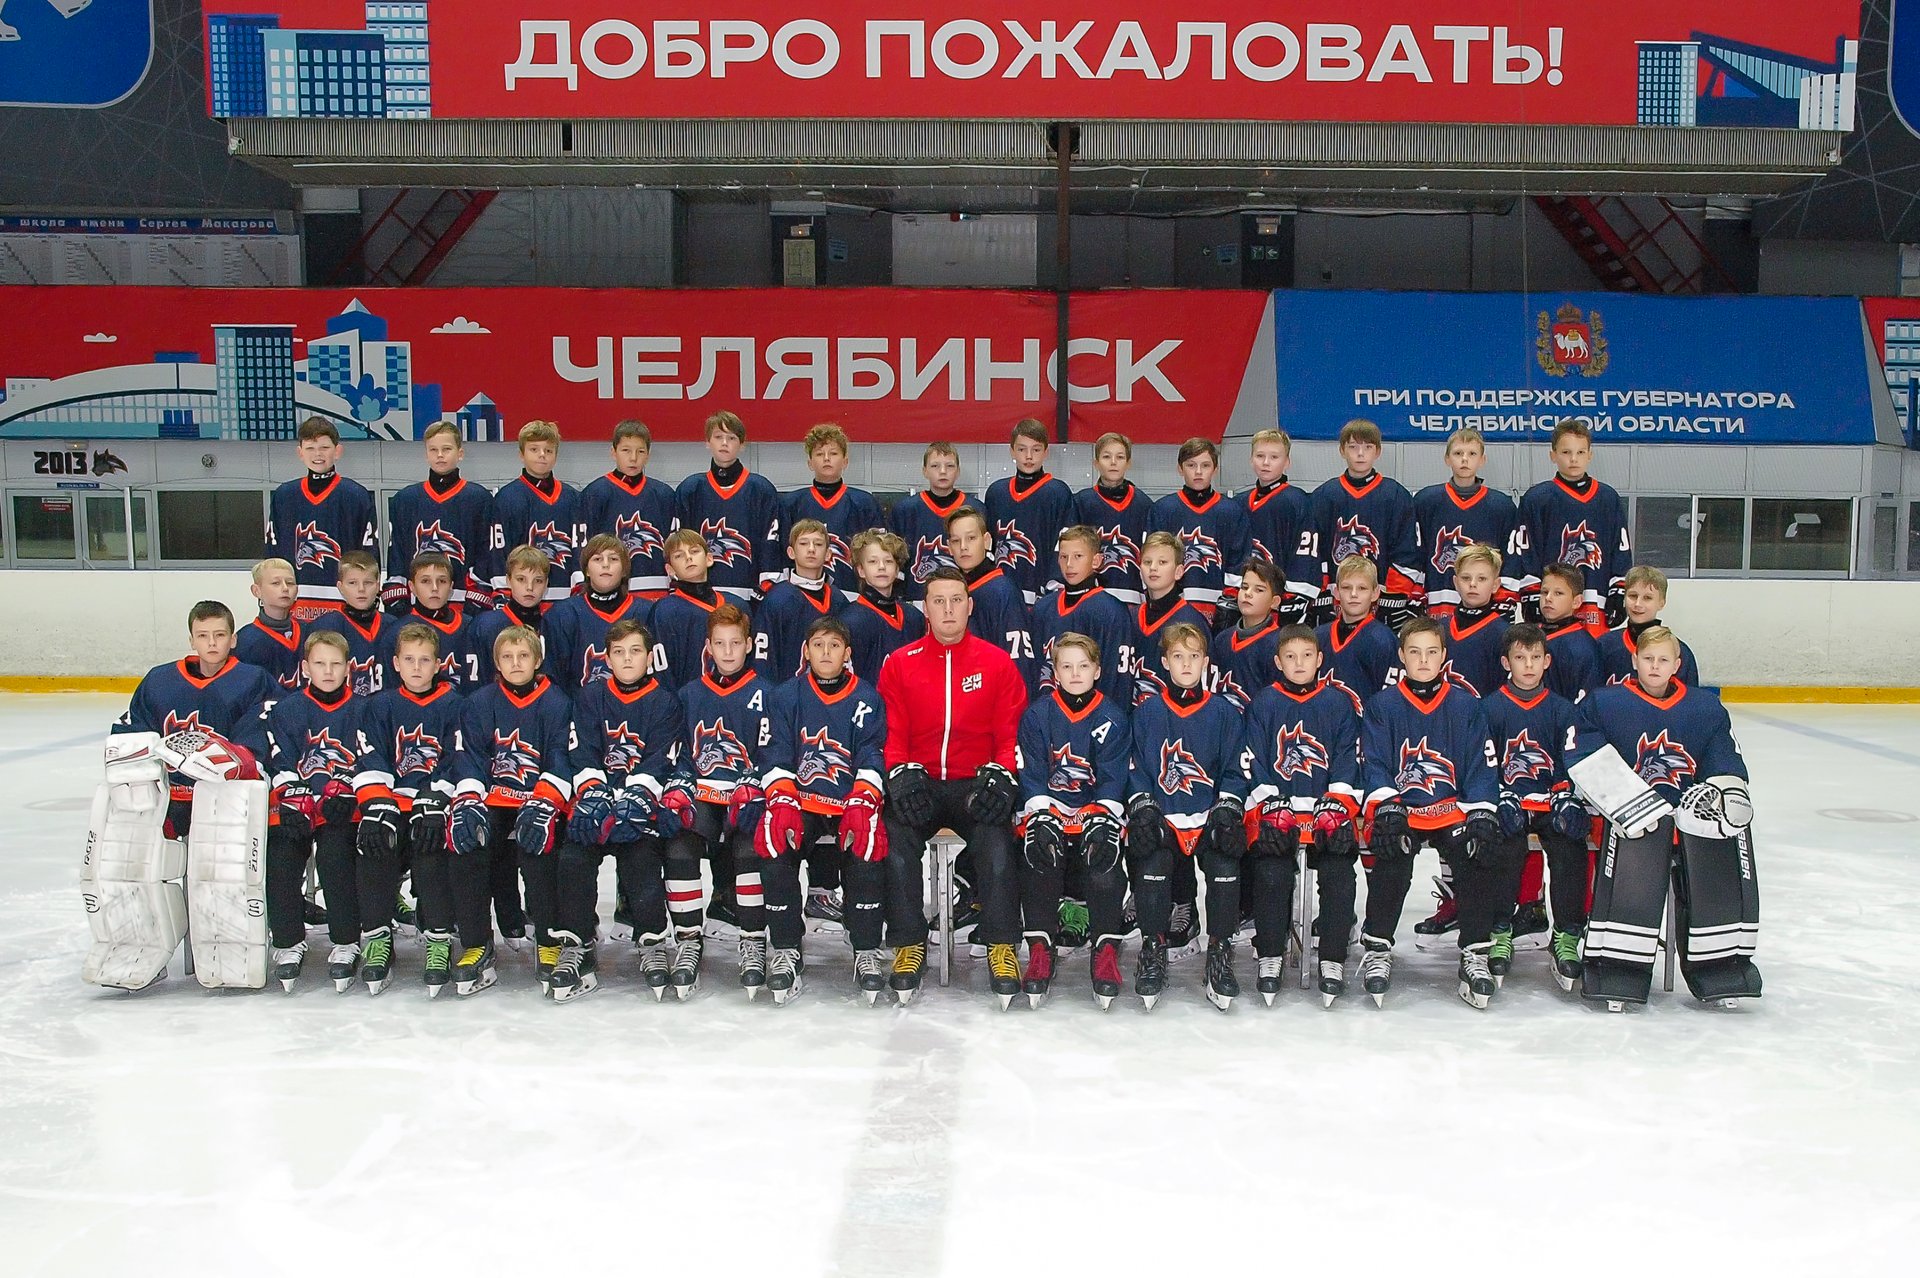 Хоккей мхл 2023 россия. Челябинск 2011 год. Хоккейная команда молодцы картинка.